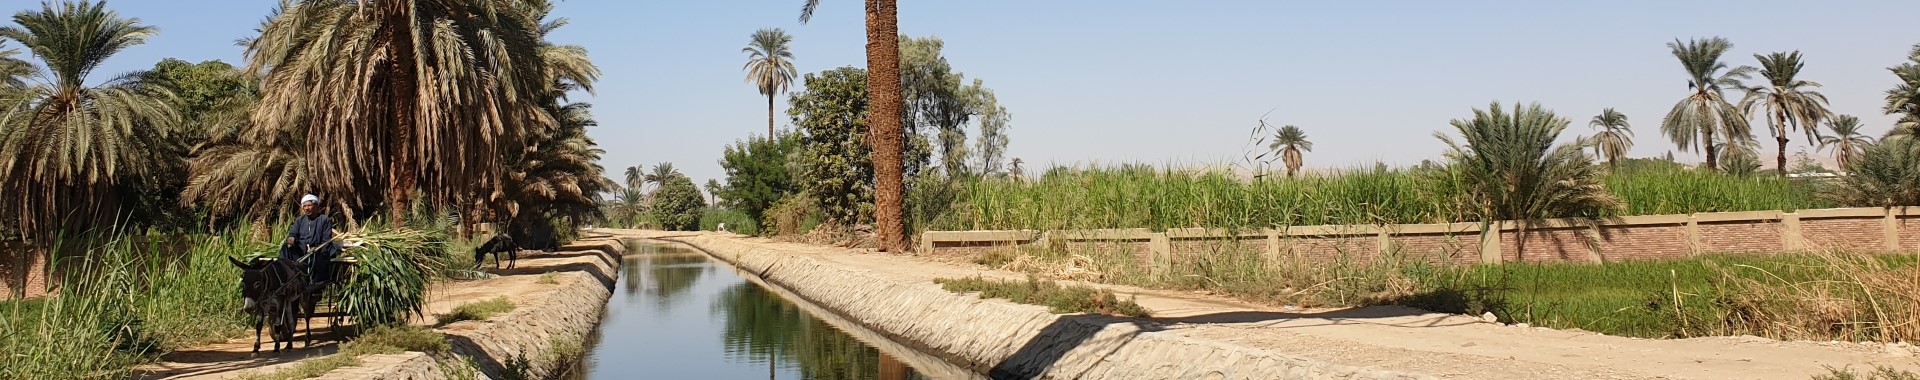 Naturpfade am Nil